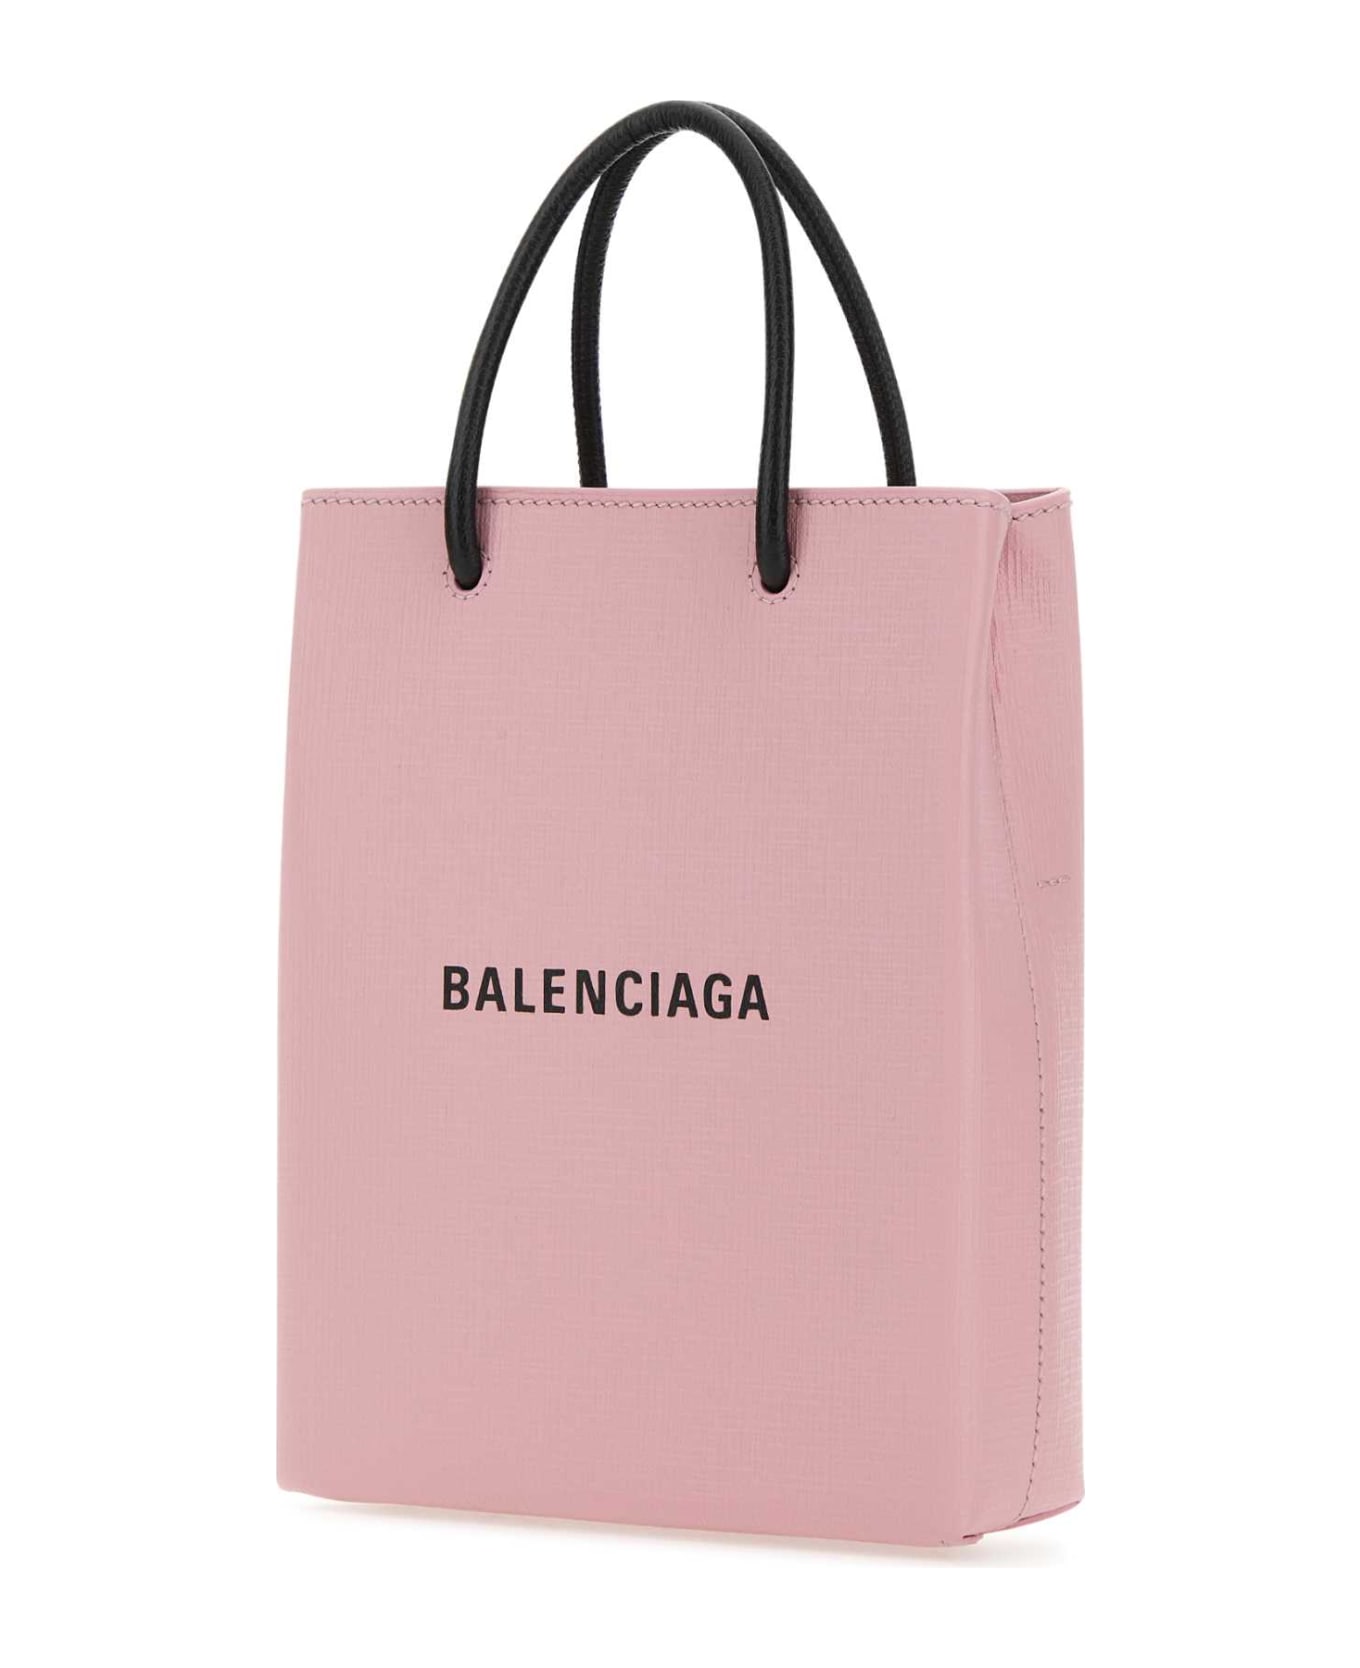 Balenciaga Pastel Pink Leather Phone Case - 6960 デジタルアクセサリー